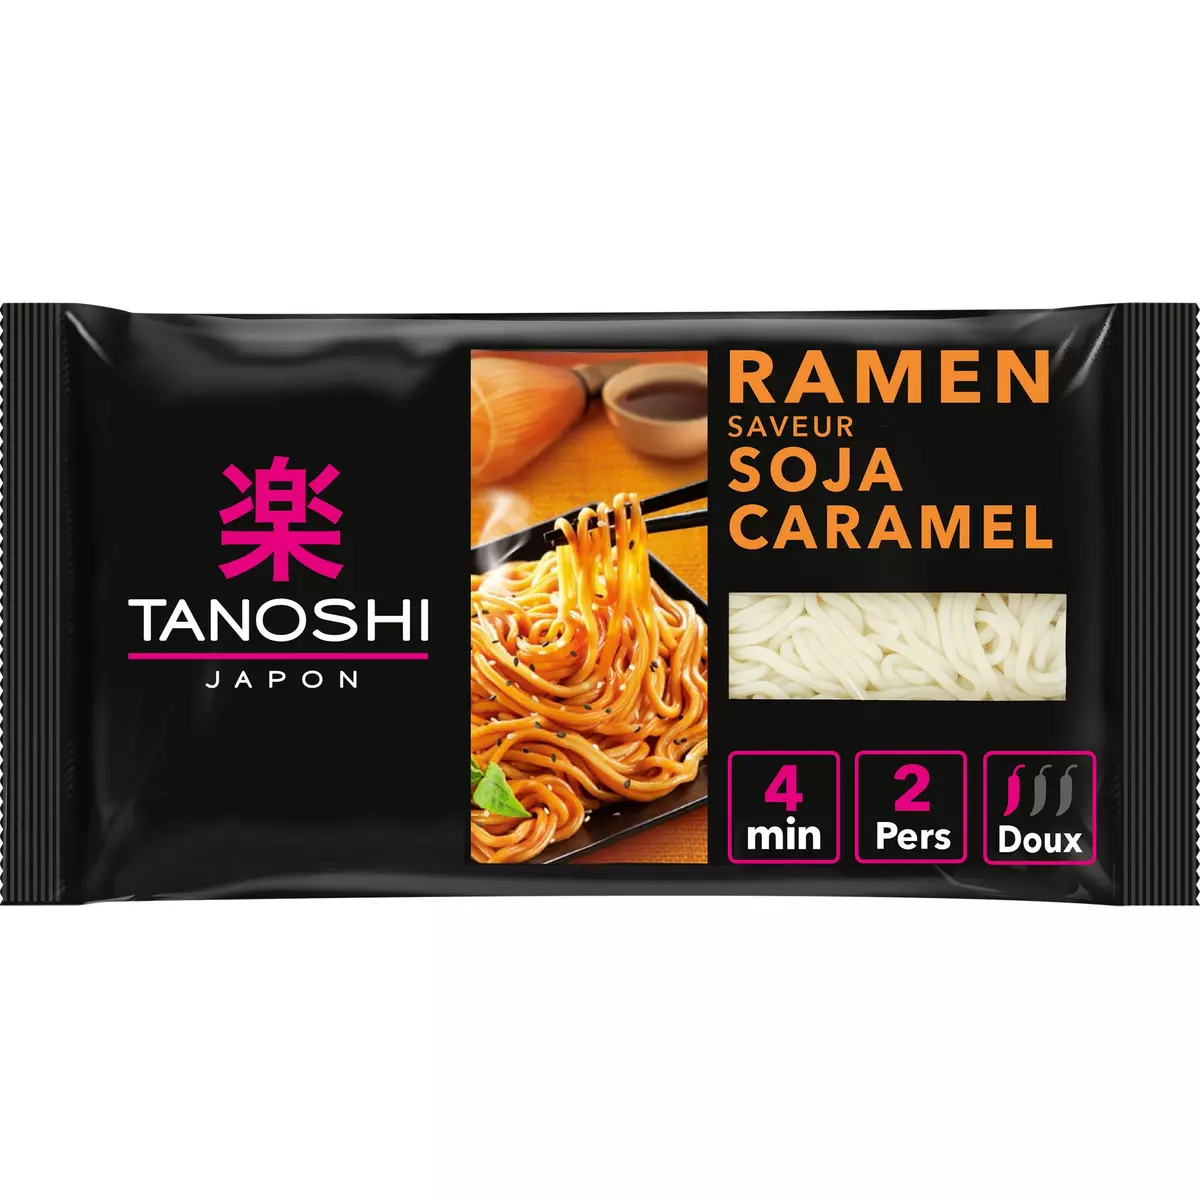 TANOSHI Ramen nouilles asiatiques précuites saveur soja caramel en sachet 2 personnes 360g